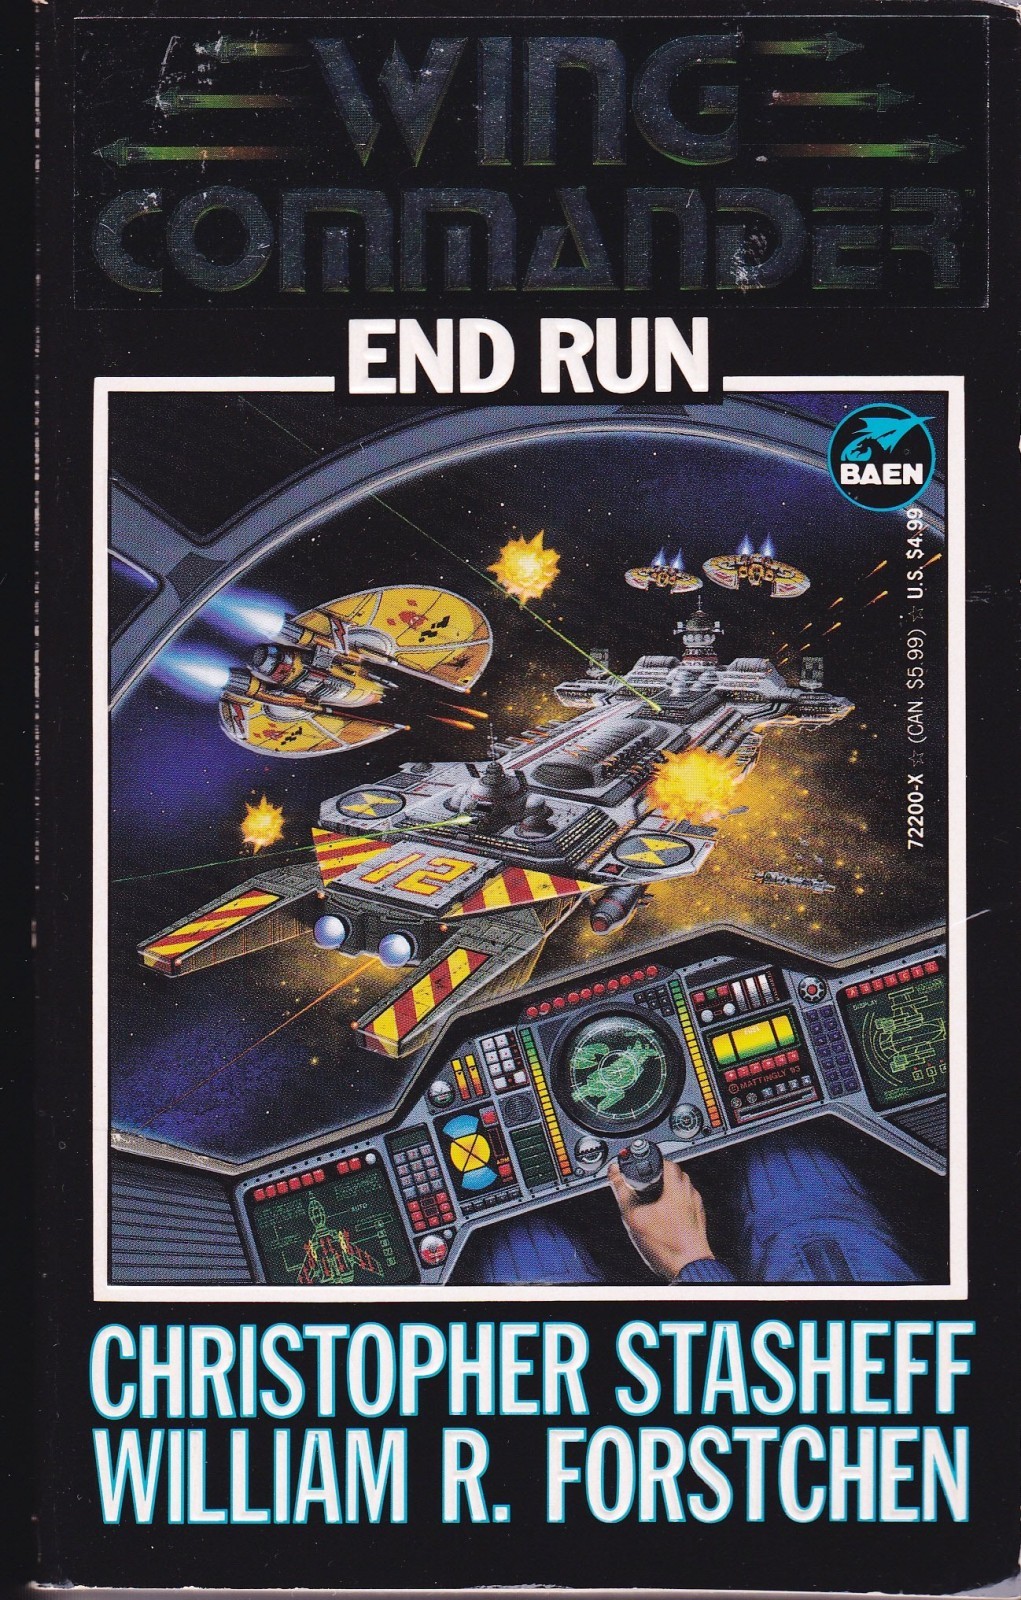 End Run